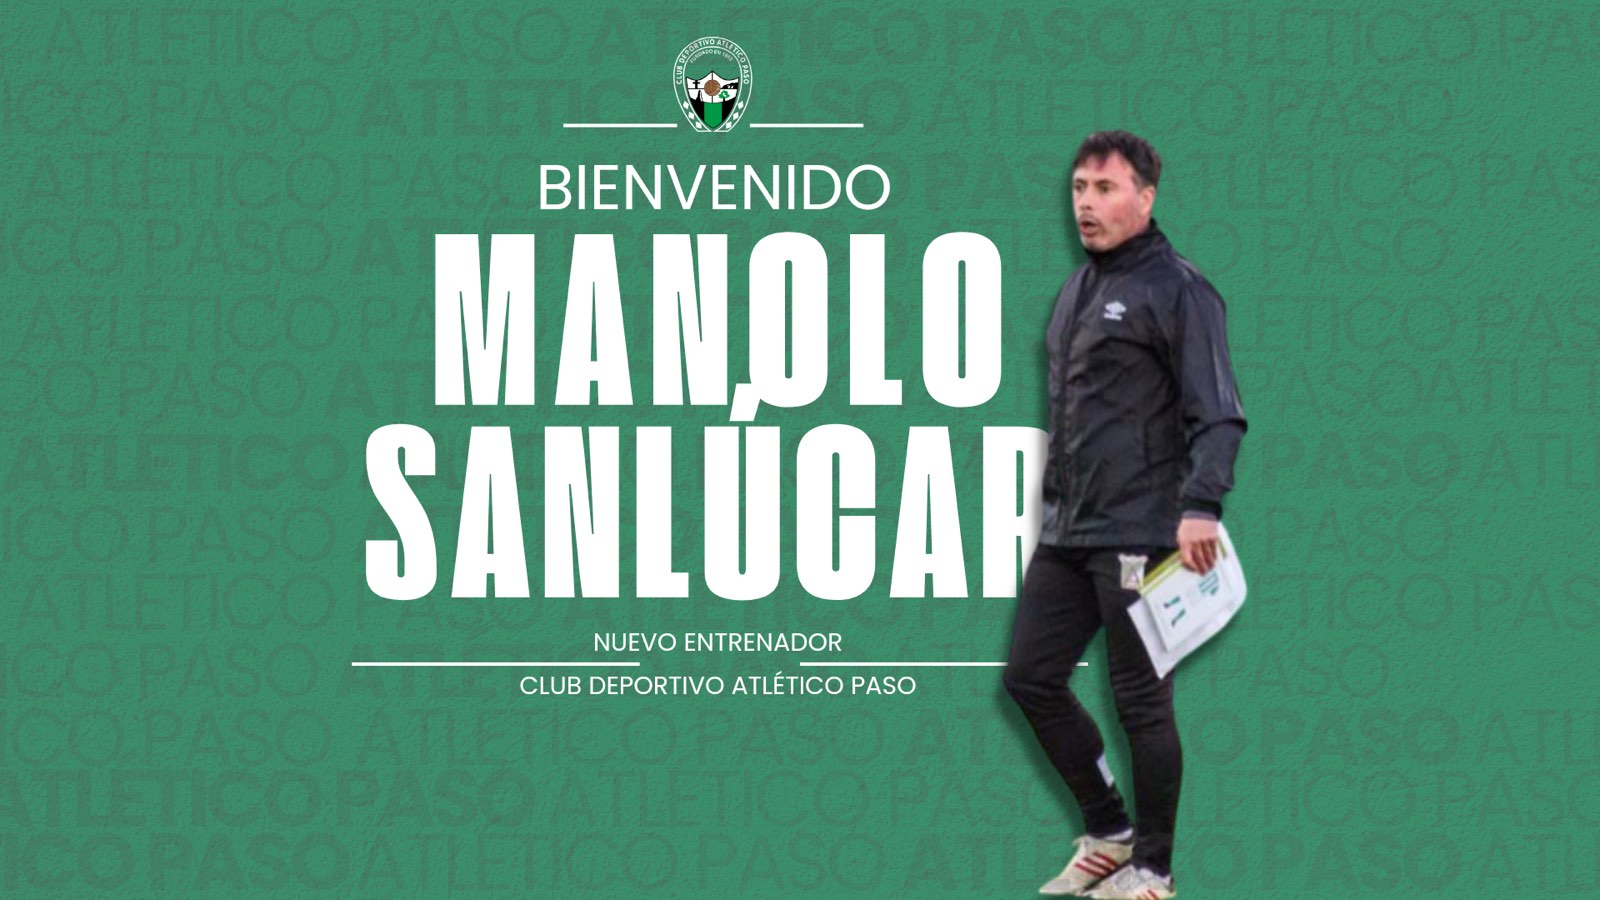 El técnico Manolo Sanlúcar se suma al proyecto deportivo del C.D. Atlético Paso